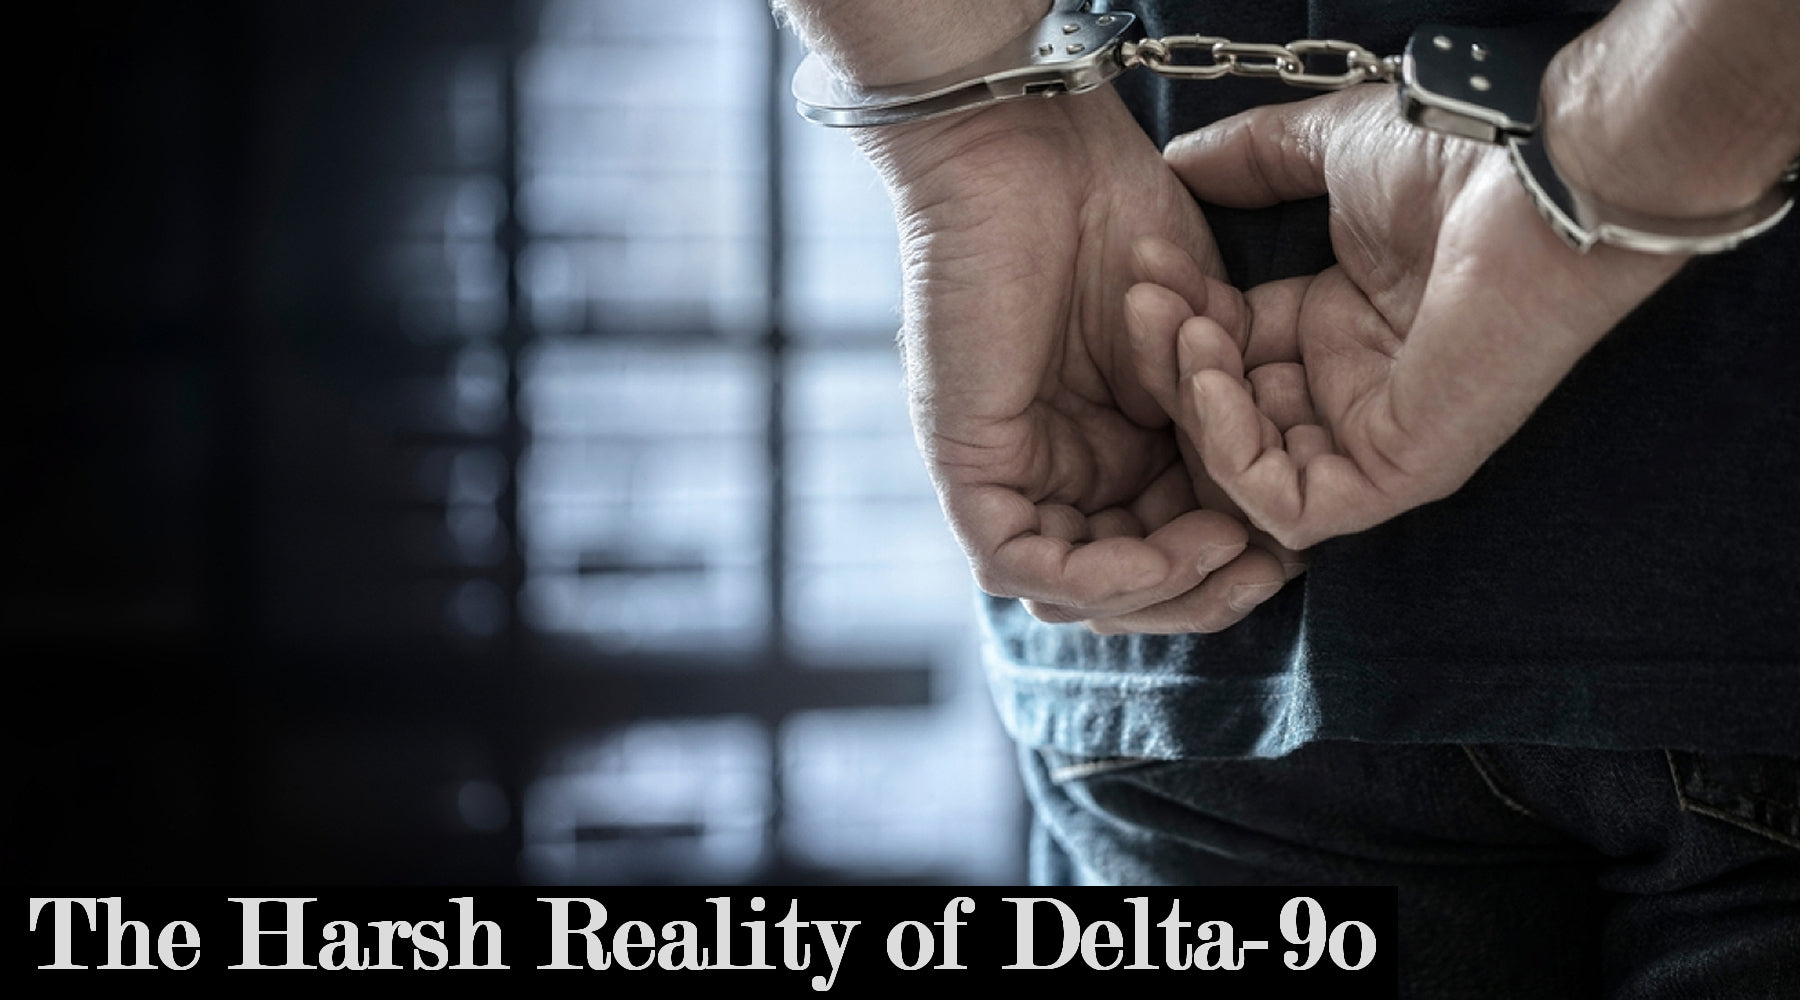 The Harsh Reality of Delta-9o